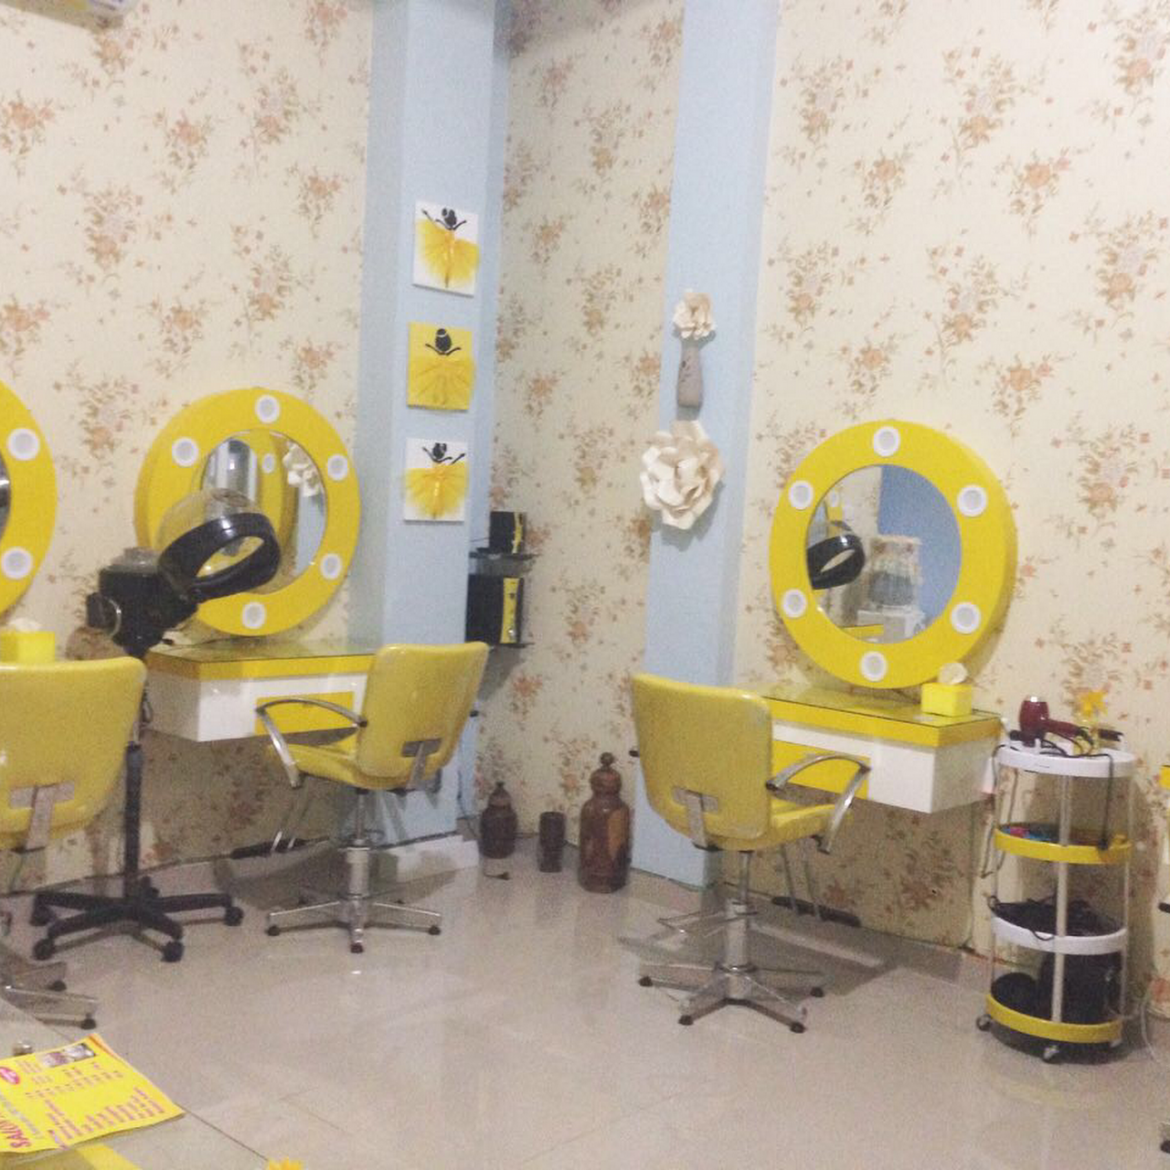 5 Tempat Salon di Palembang, Tampil Cantik Percaya Diri dengan Layanan Lengkap!